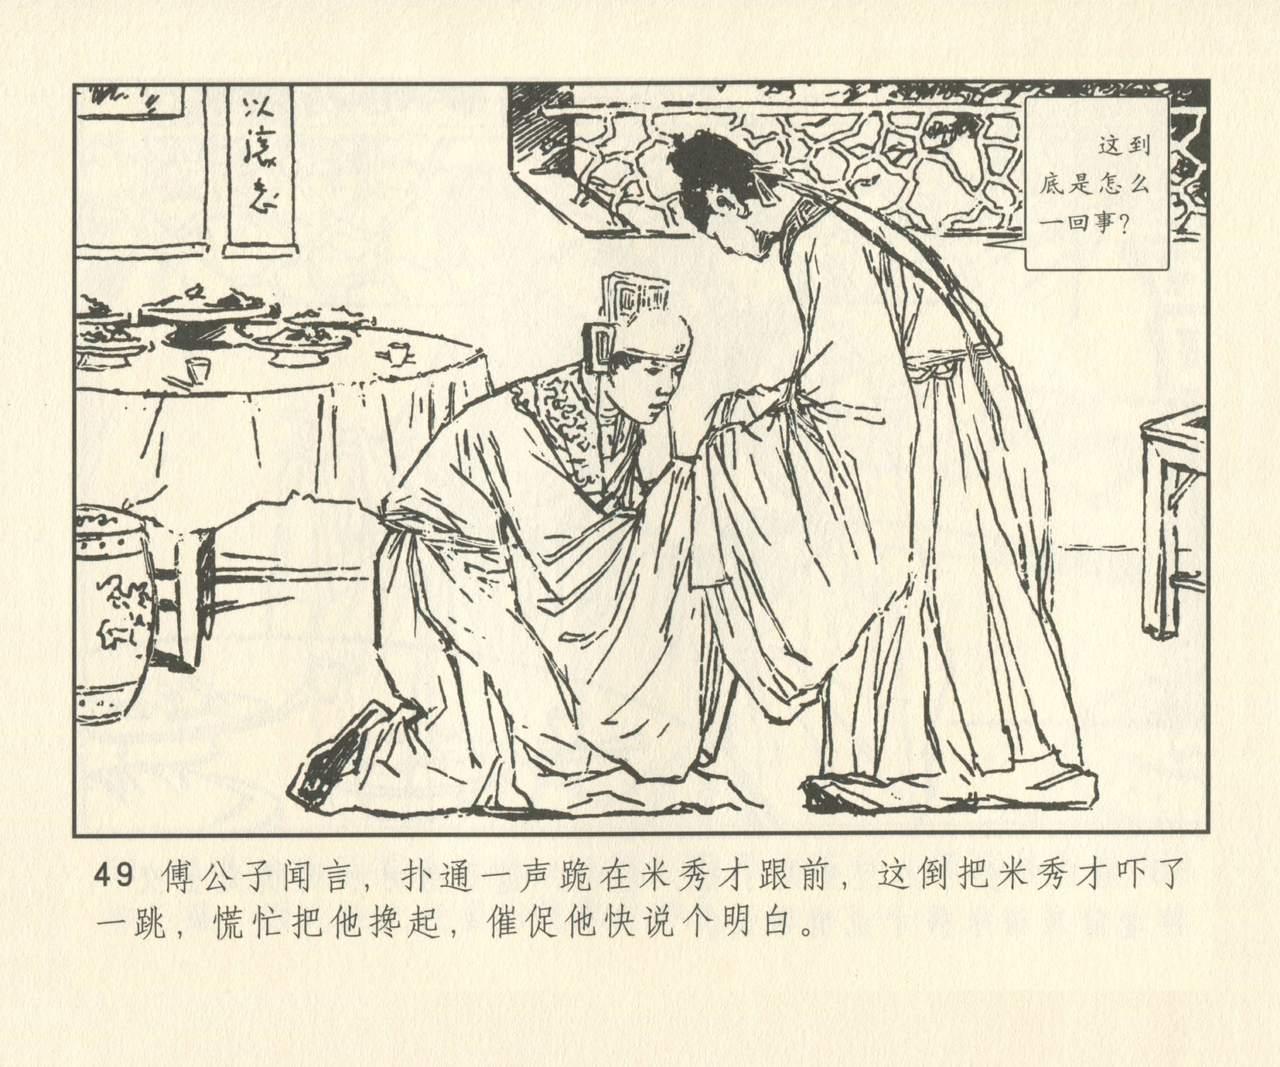 聊斋志异 张玮等绘 天津人民美术出版社 卷二十一 ~ 三十 177